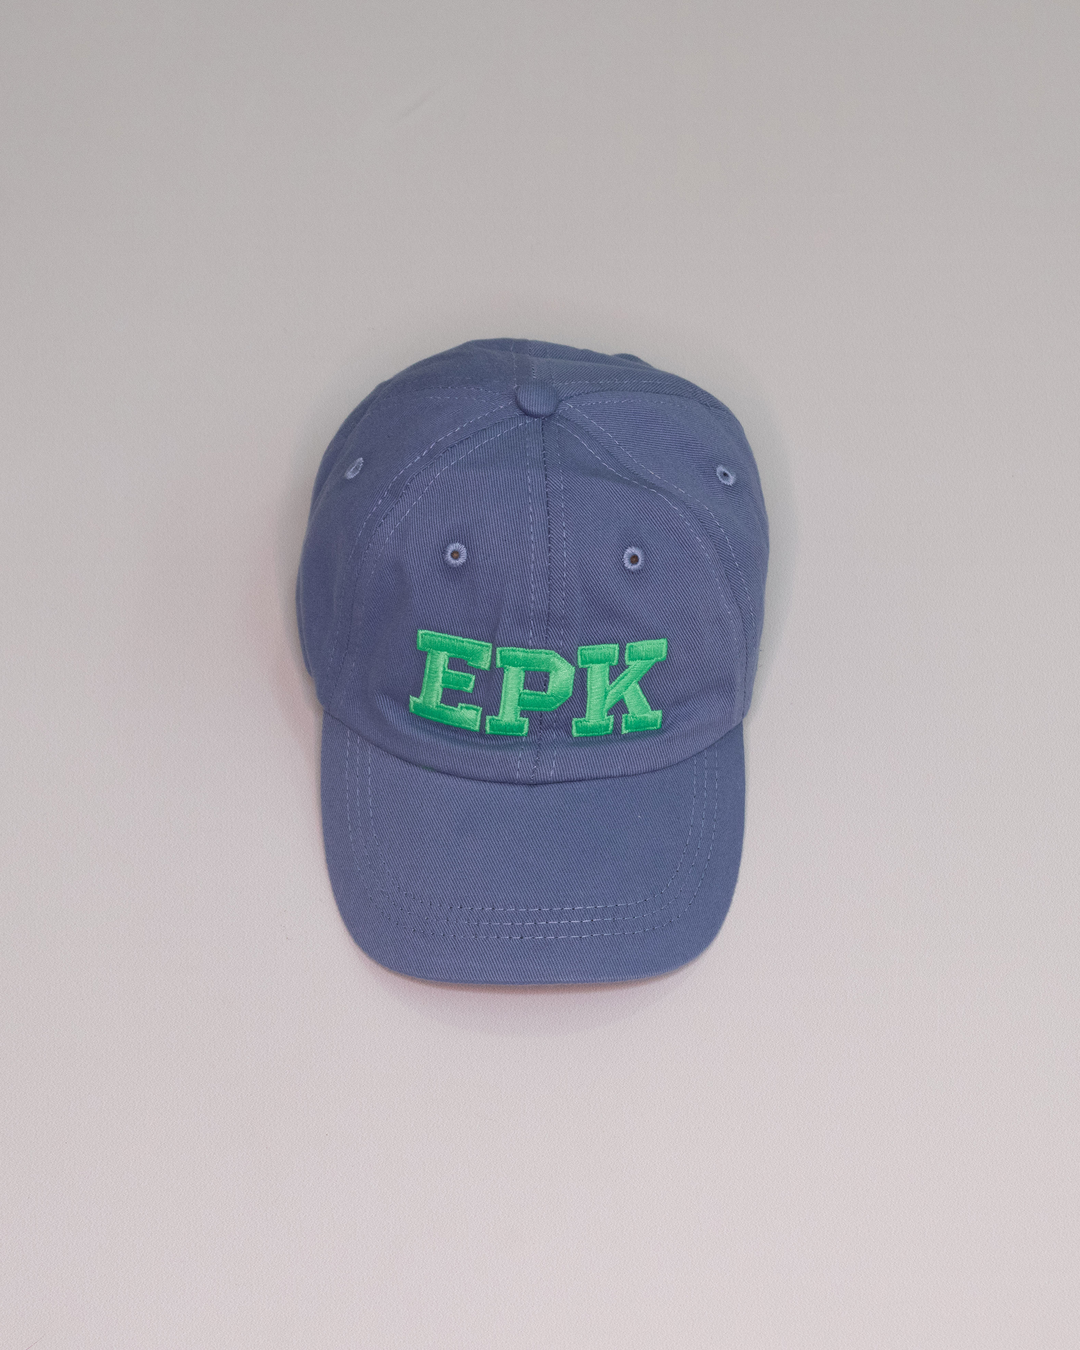 Gorra azul con letras EPK en verde